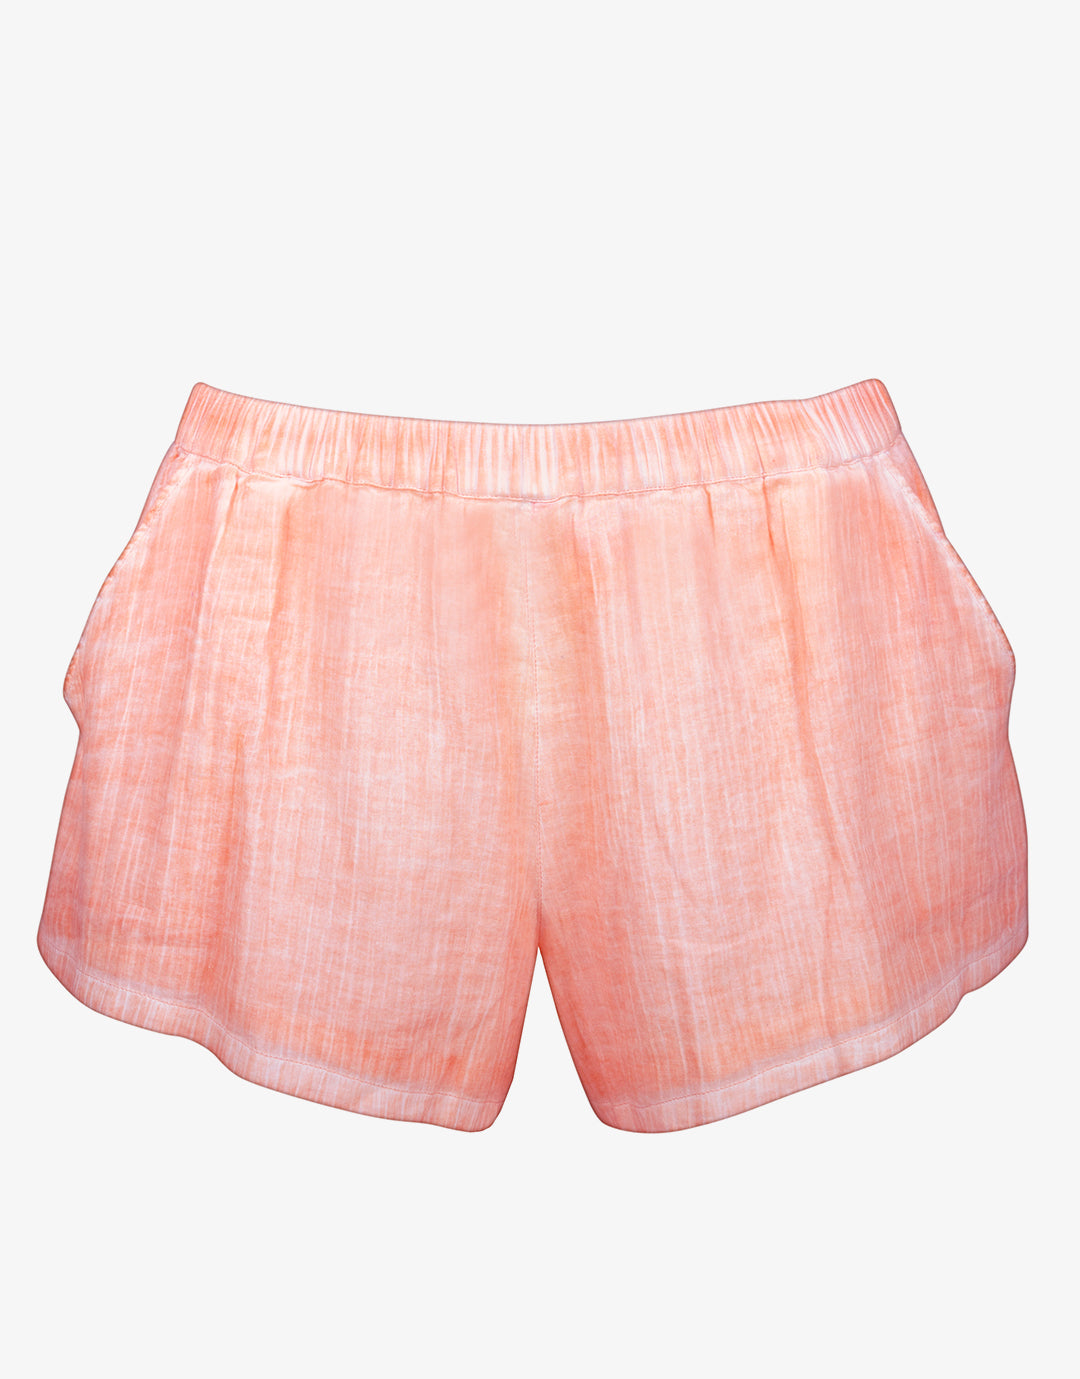 Beach Shorts - Mellow Peach - Simply Beach UK